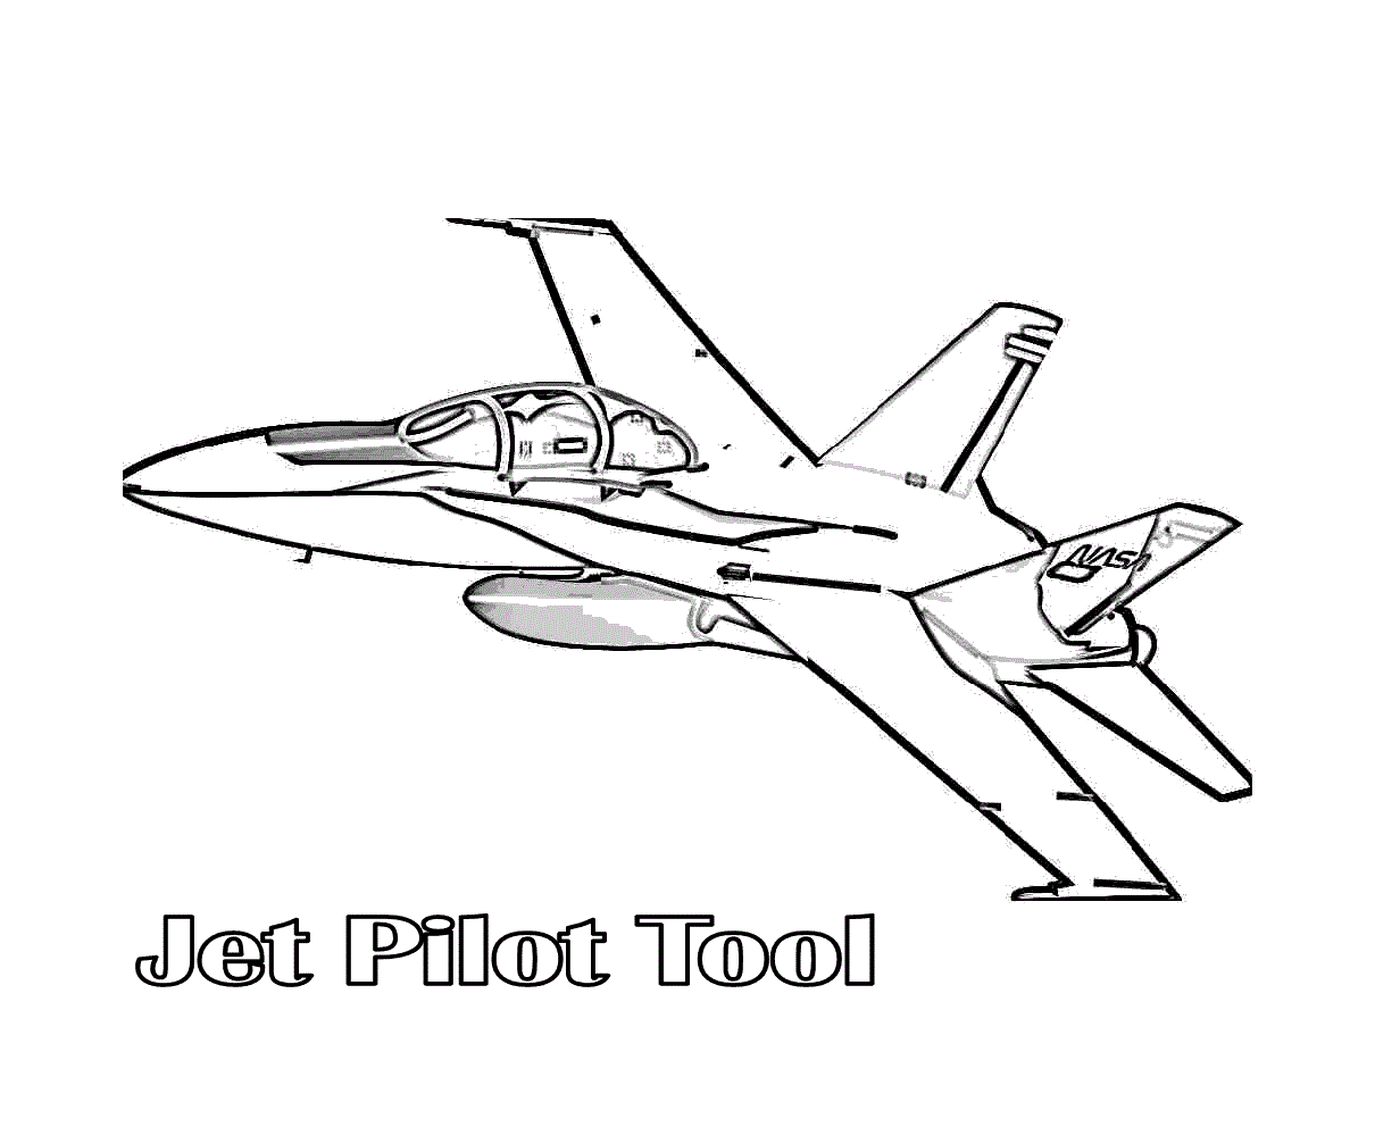   Un avion de chasse avec le texte outil du pilote de jet 